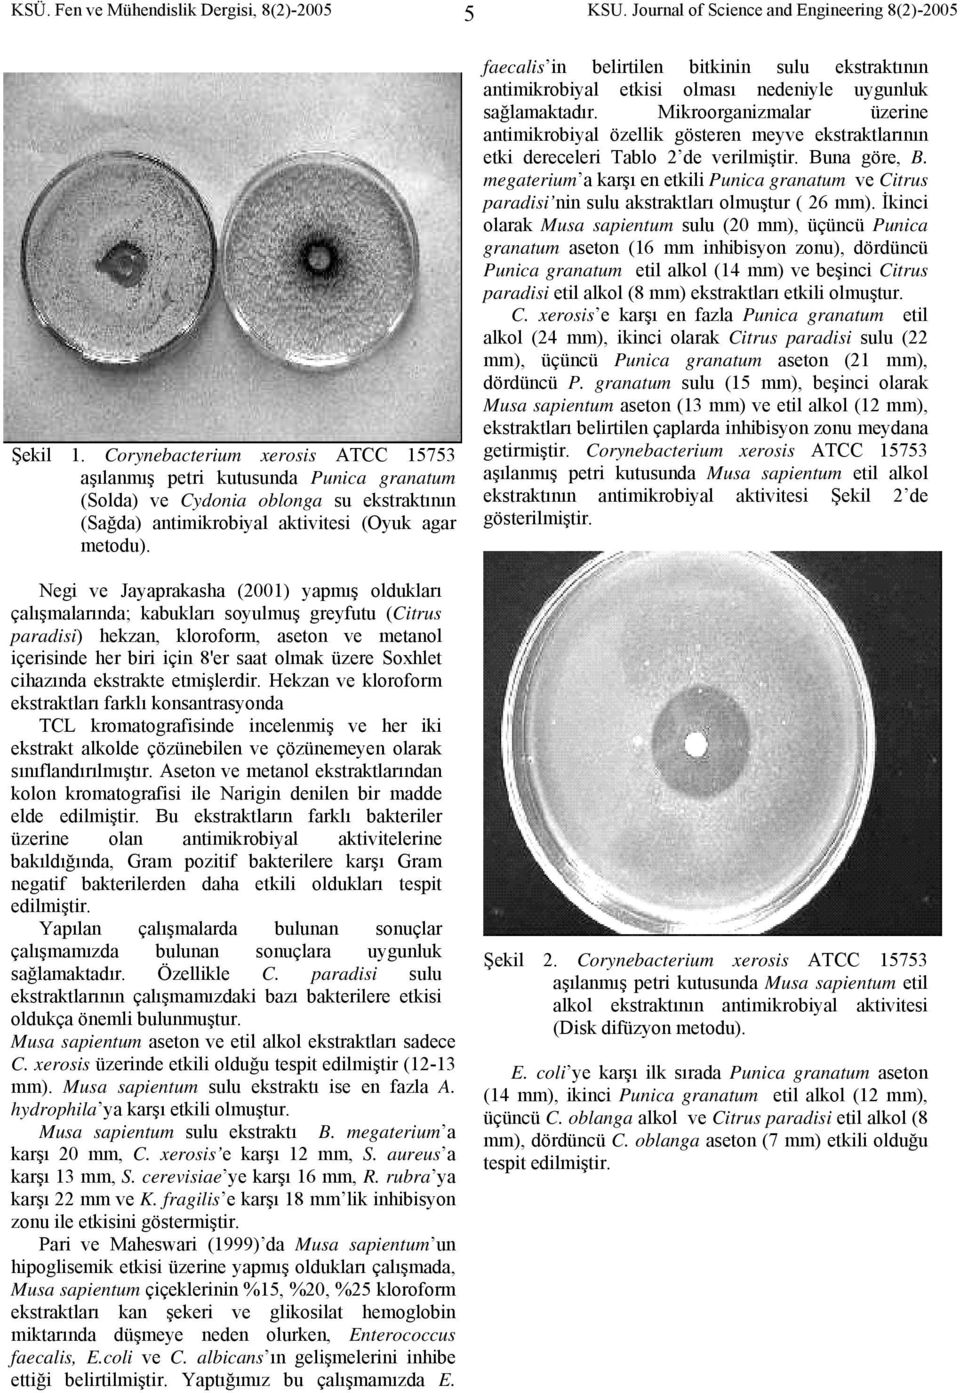 Negi ve Jayaprakasha (2001) yapmış oldukları çalışmalarında; kabukları soyulmuş greyfutu (Citrus paradisi) hekzan, kloroform, aseton ve metanol içerisinde her biri için 8'er saat olmak üzere Soxhlet